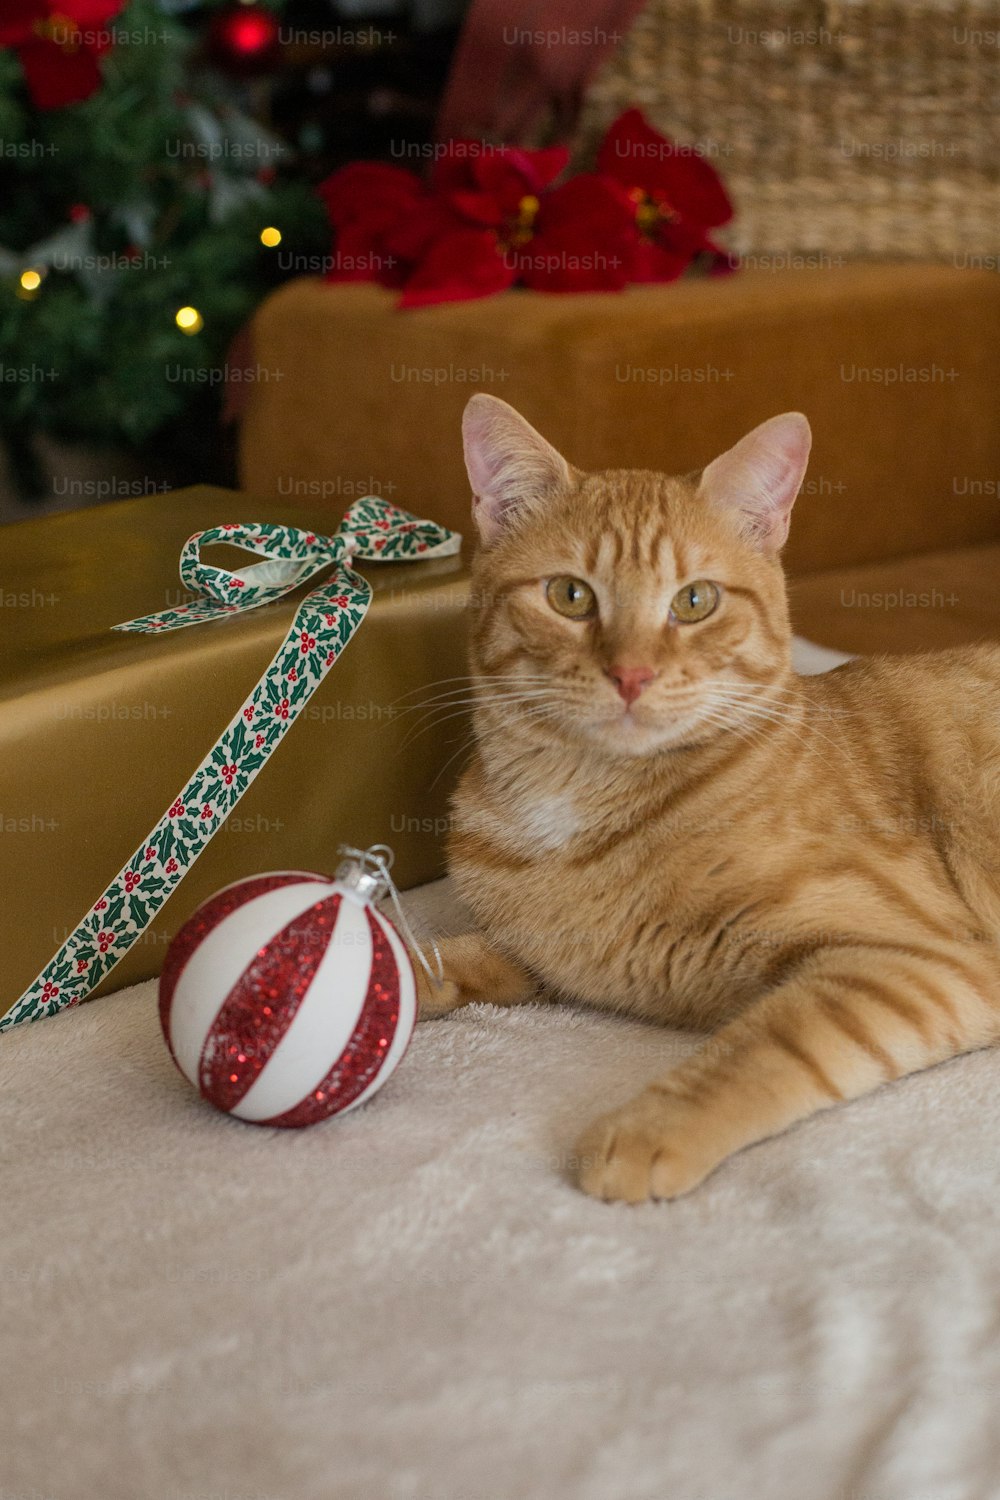 크리스마스 장식 옆에 바닥에 누워 있는 �고양이